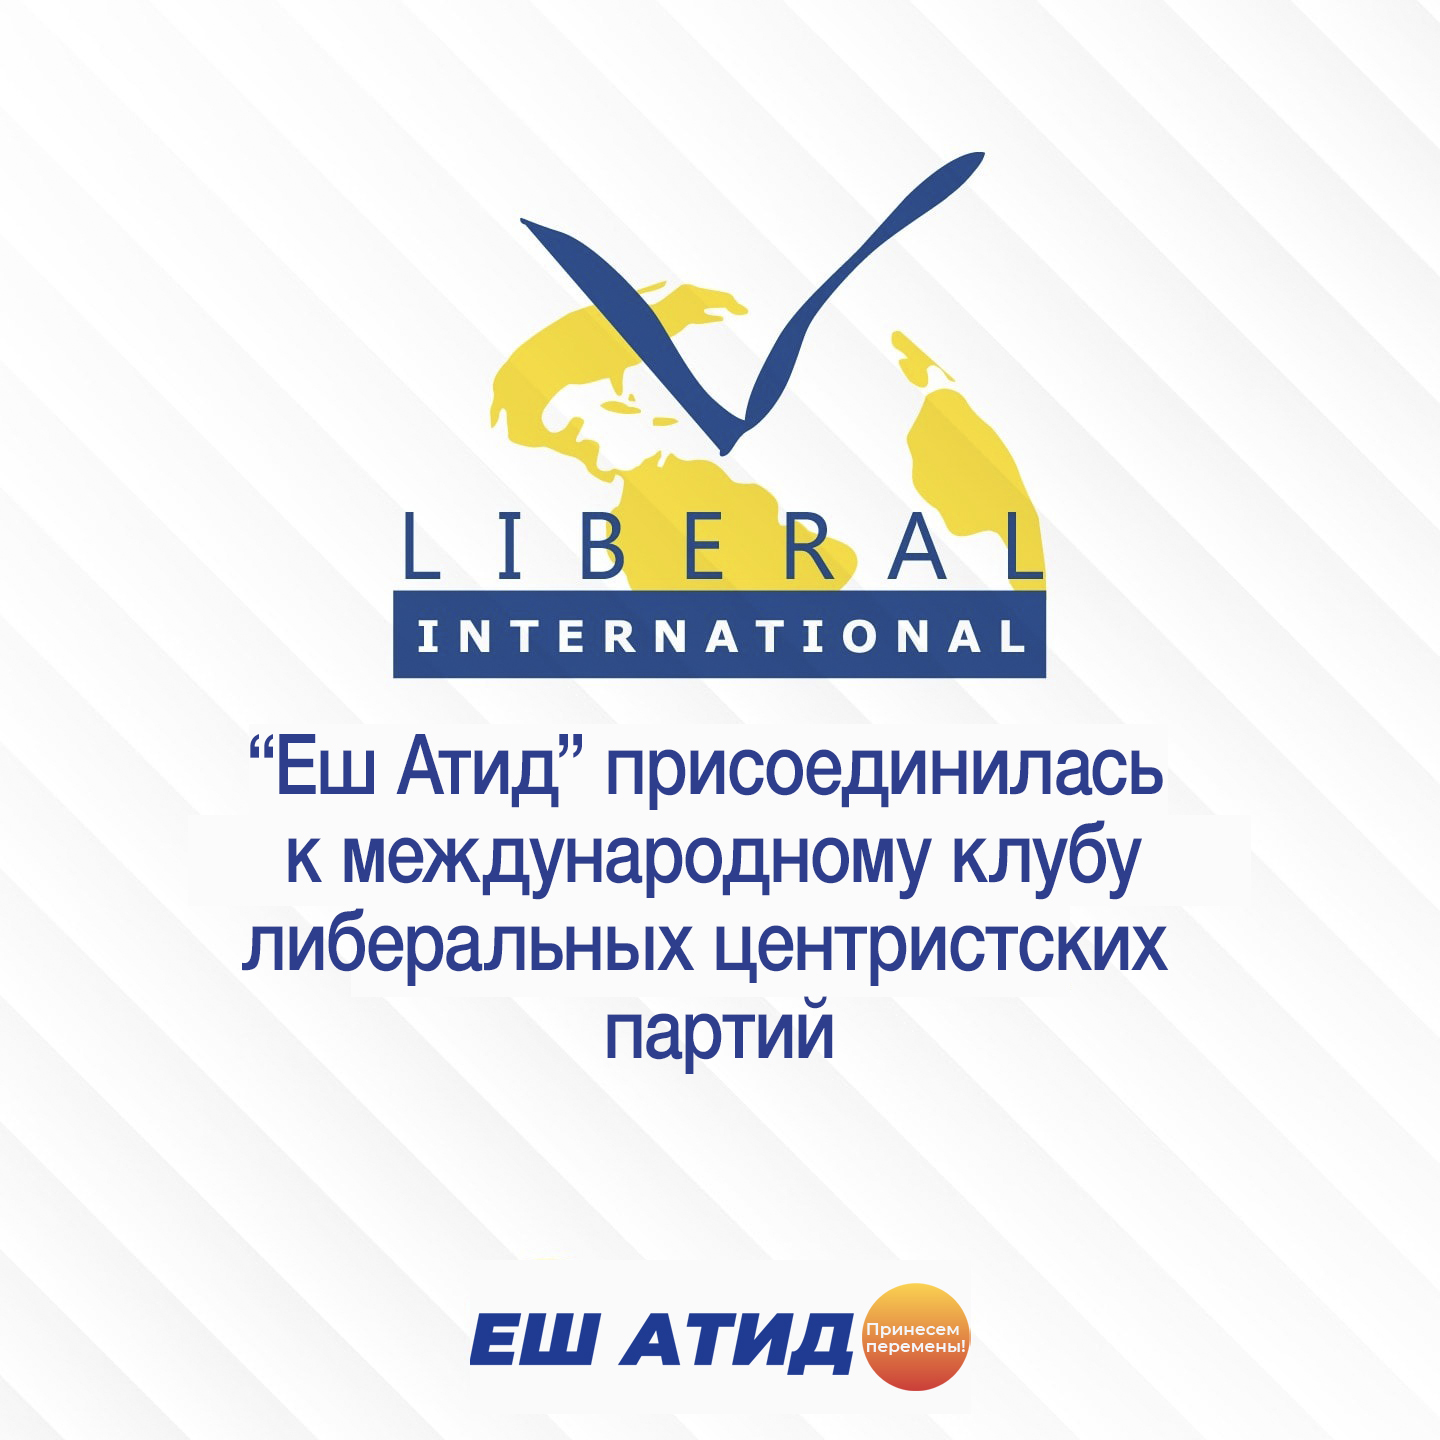 Партия «Еш Атид» была принята в члены LIBERAL INTERNATIONAL – важнейшей международной организации либеральных центристских партий